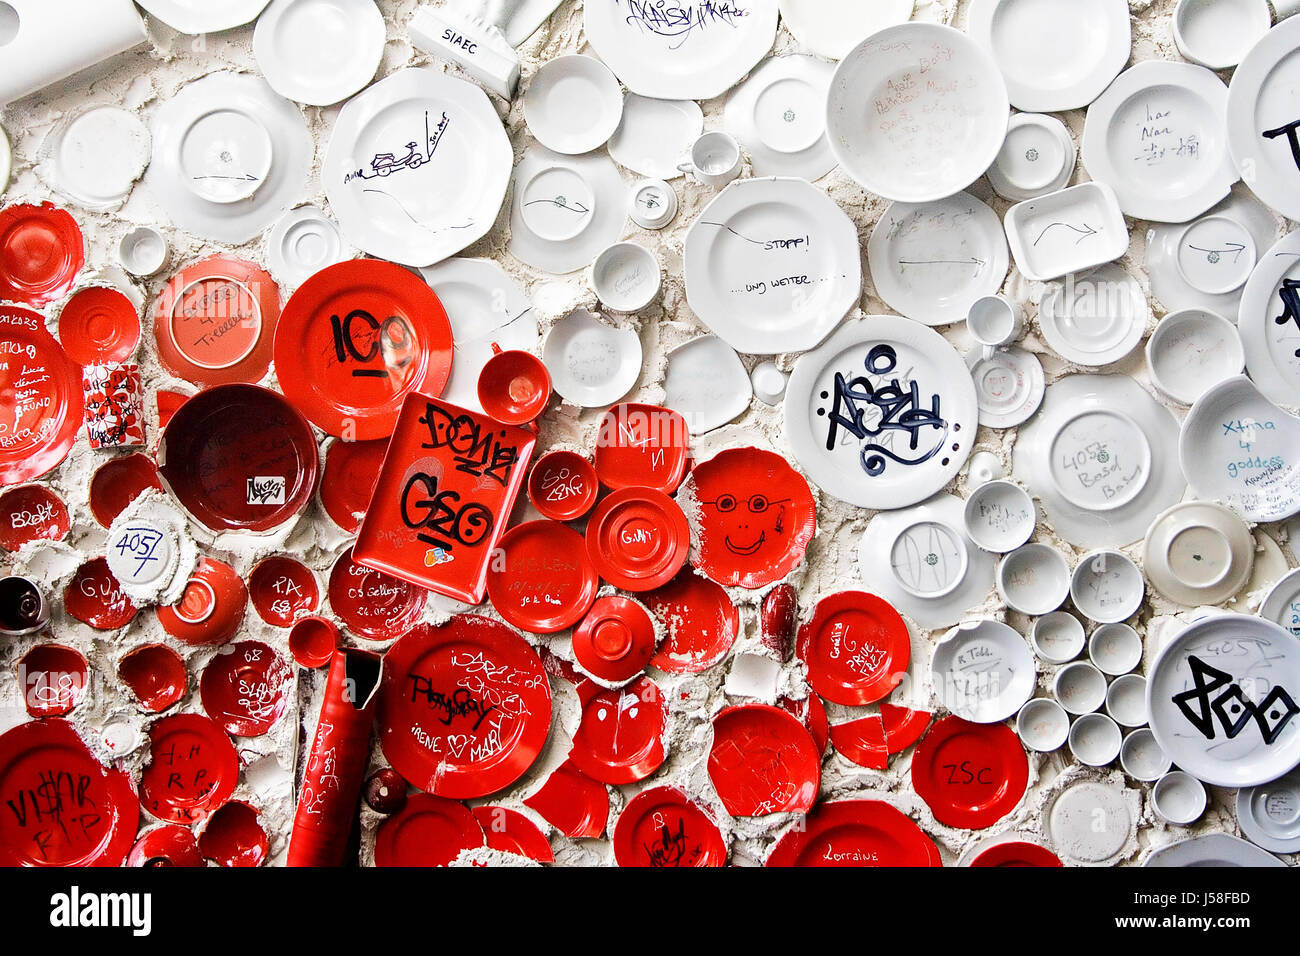 Tasse d'art d'art chaos mess confusion des plaques de bâtiment soucoupe tasses multitude Banque D'Images